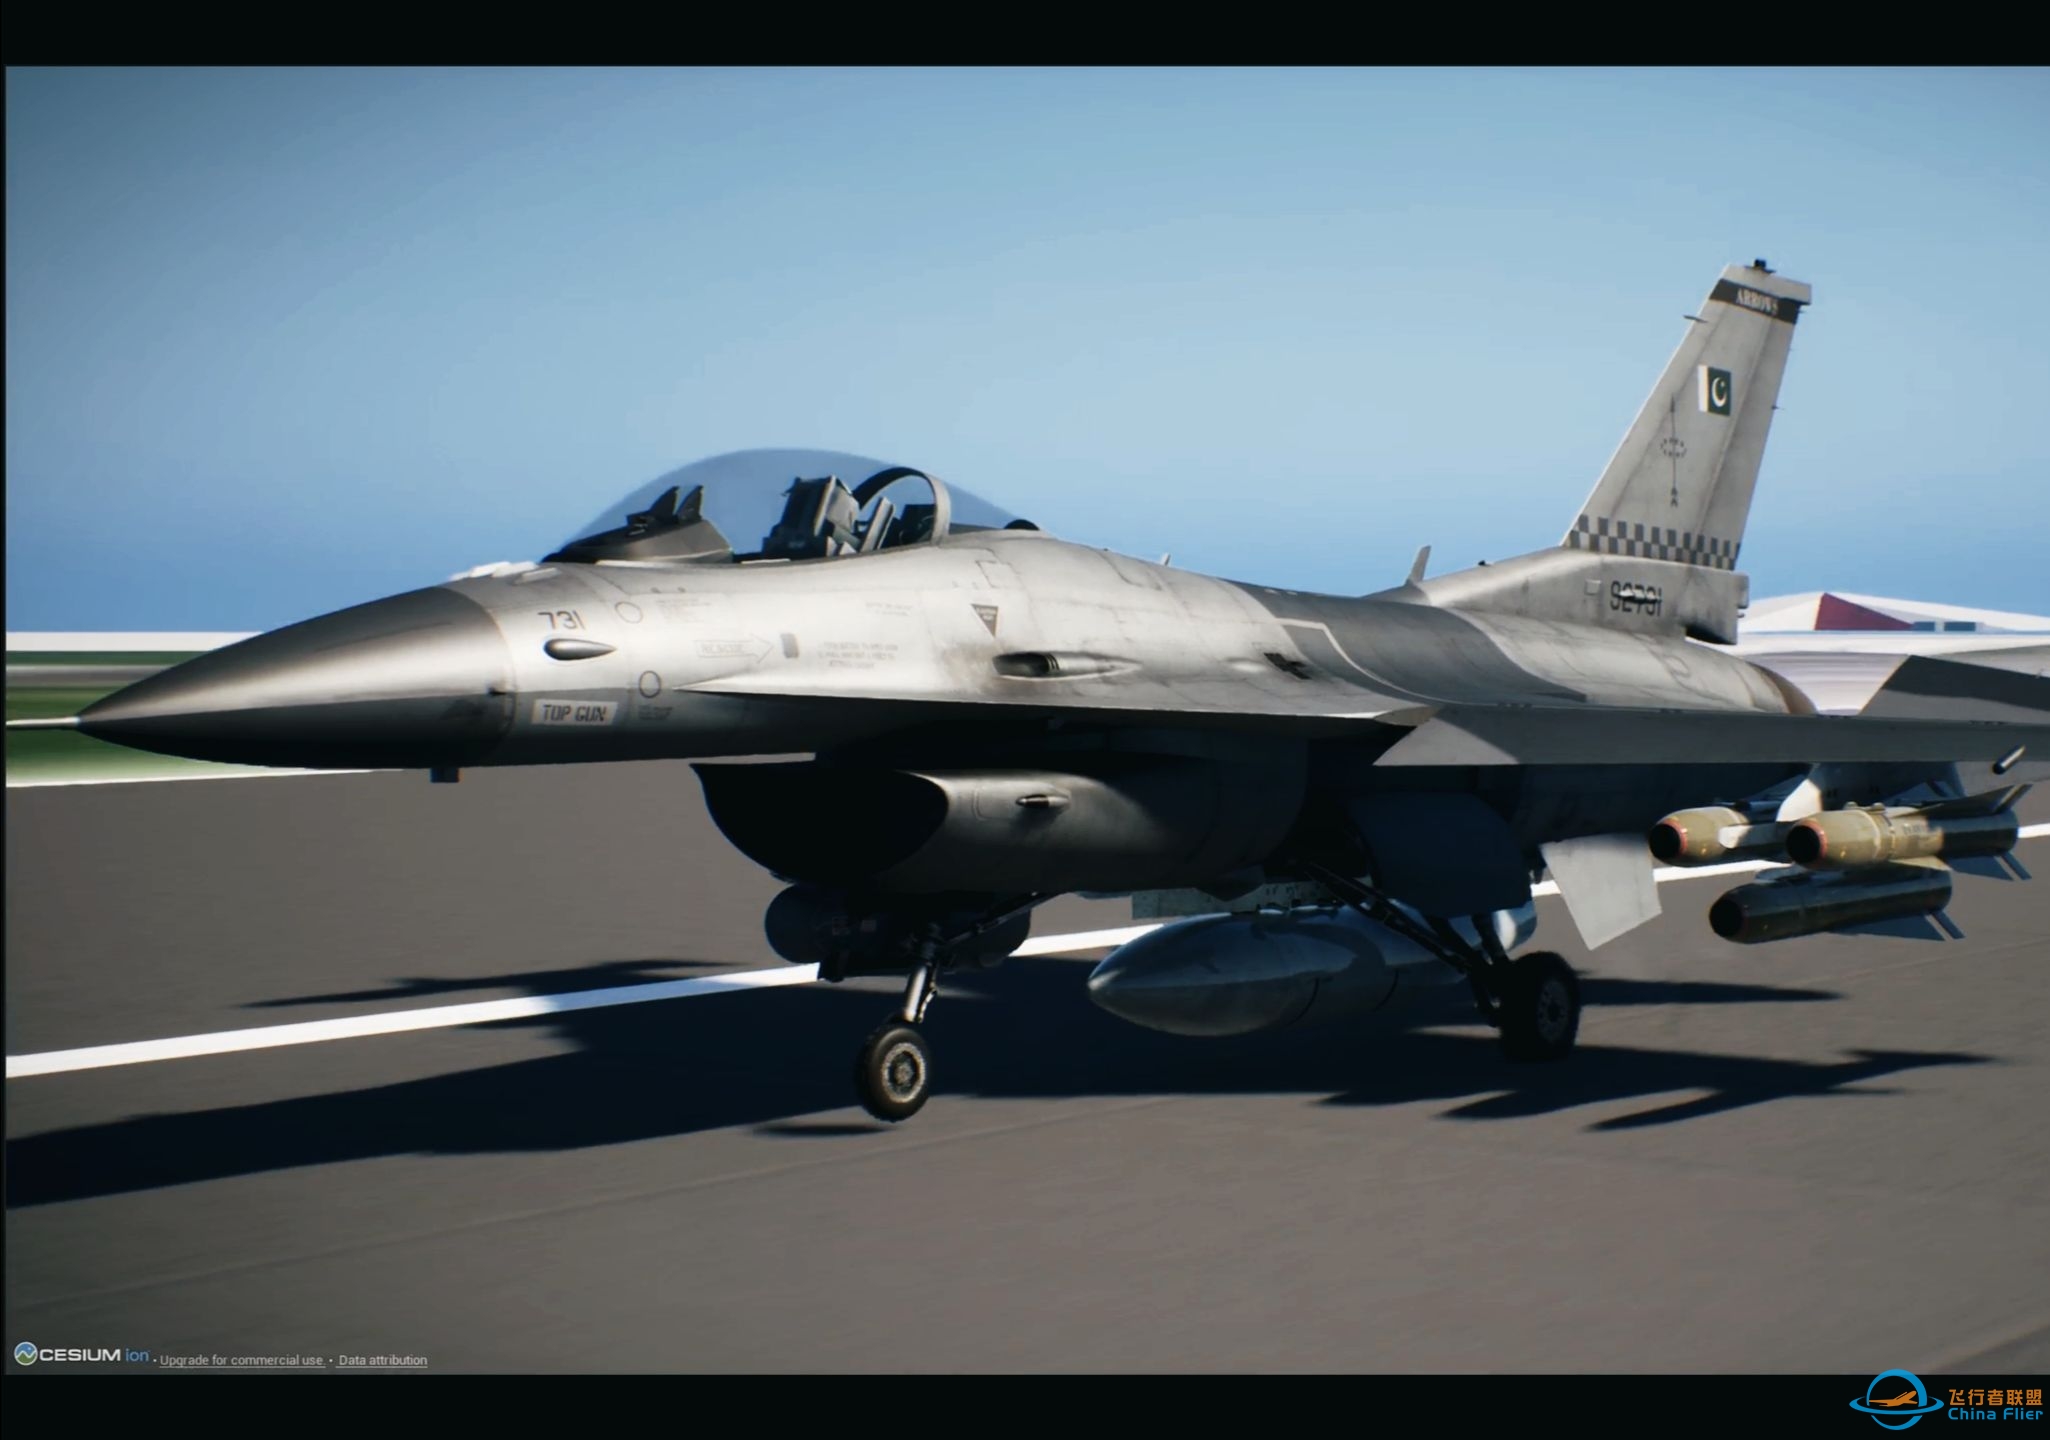 【毕业作品】自制飞行模拟F16战机展示-9380 